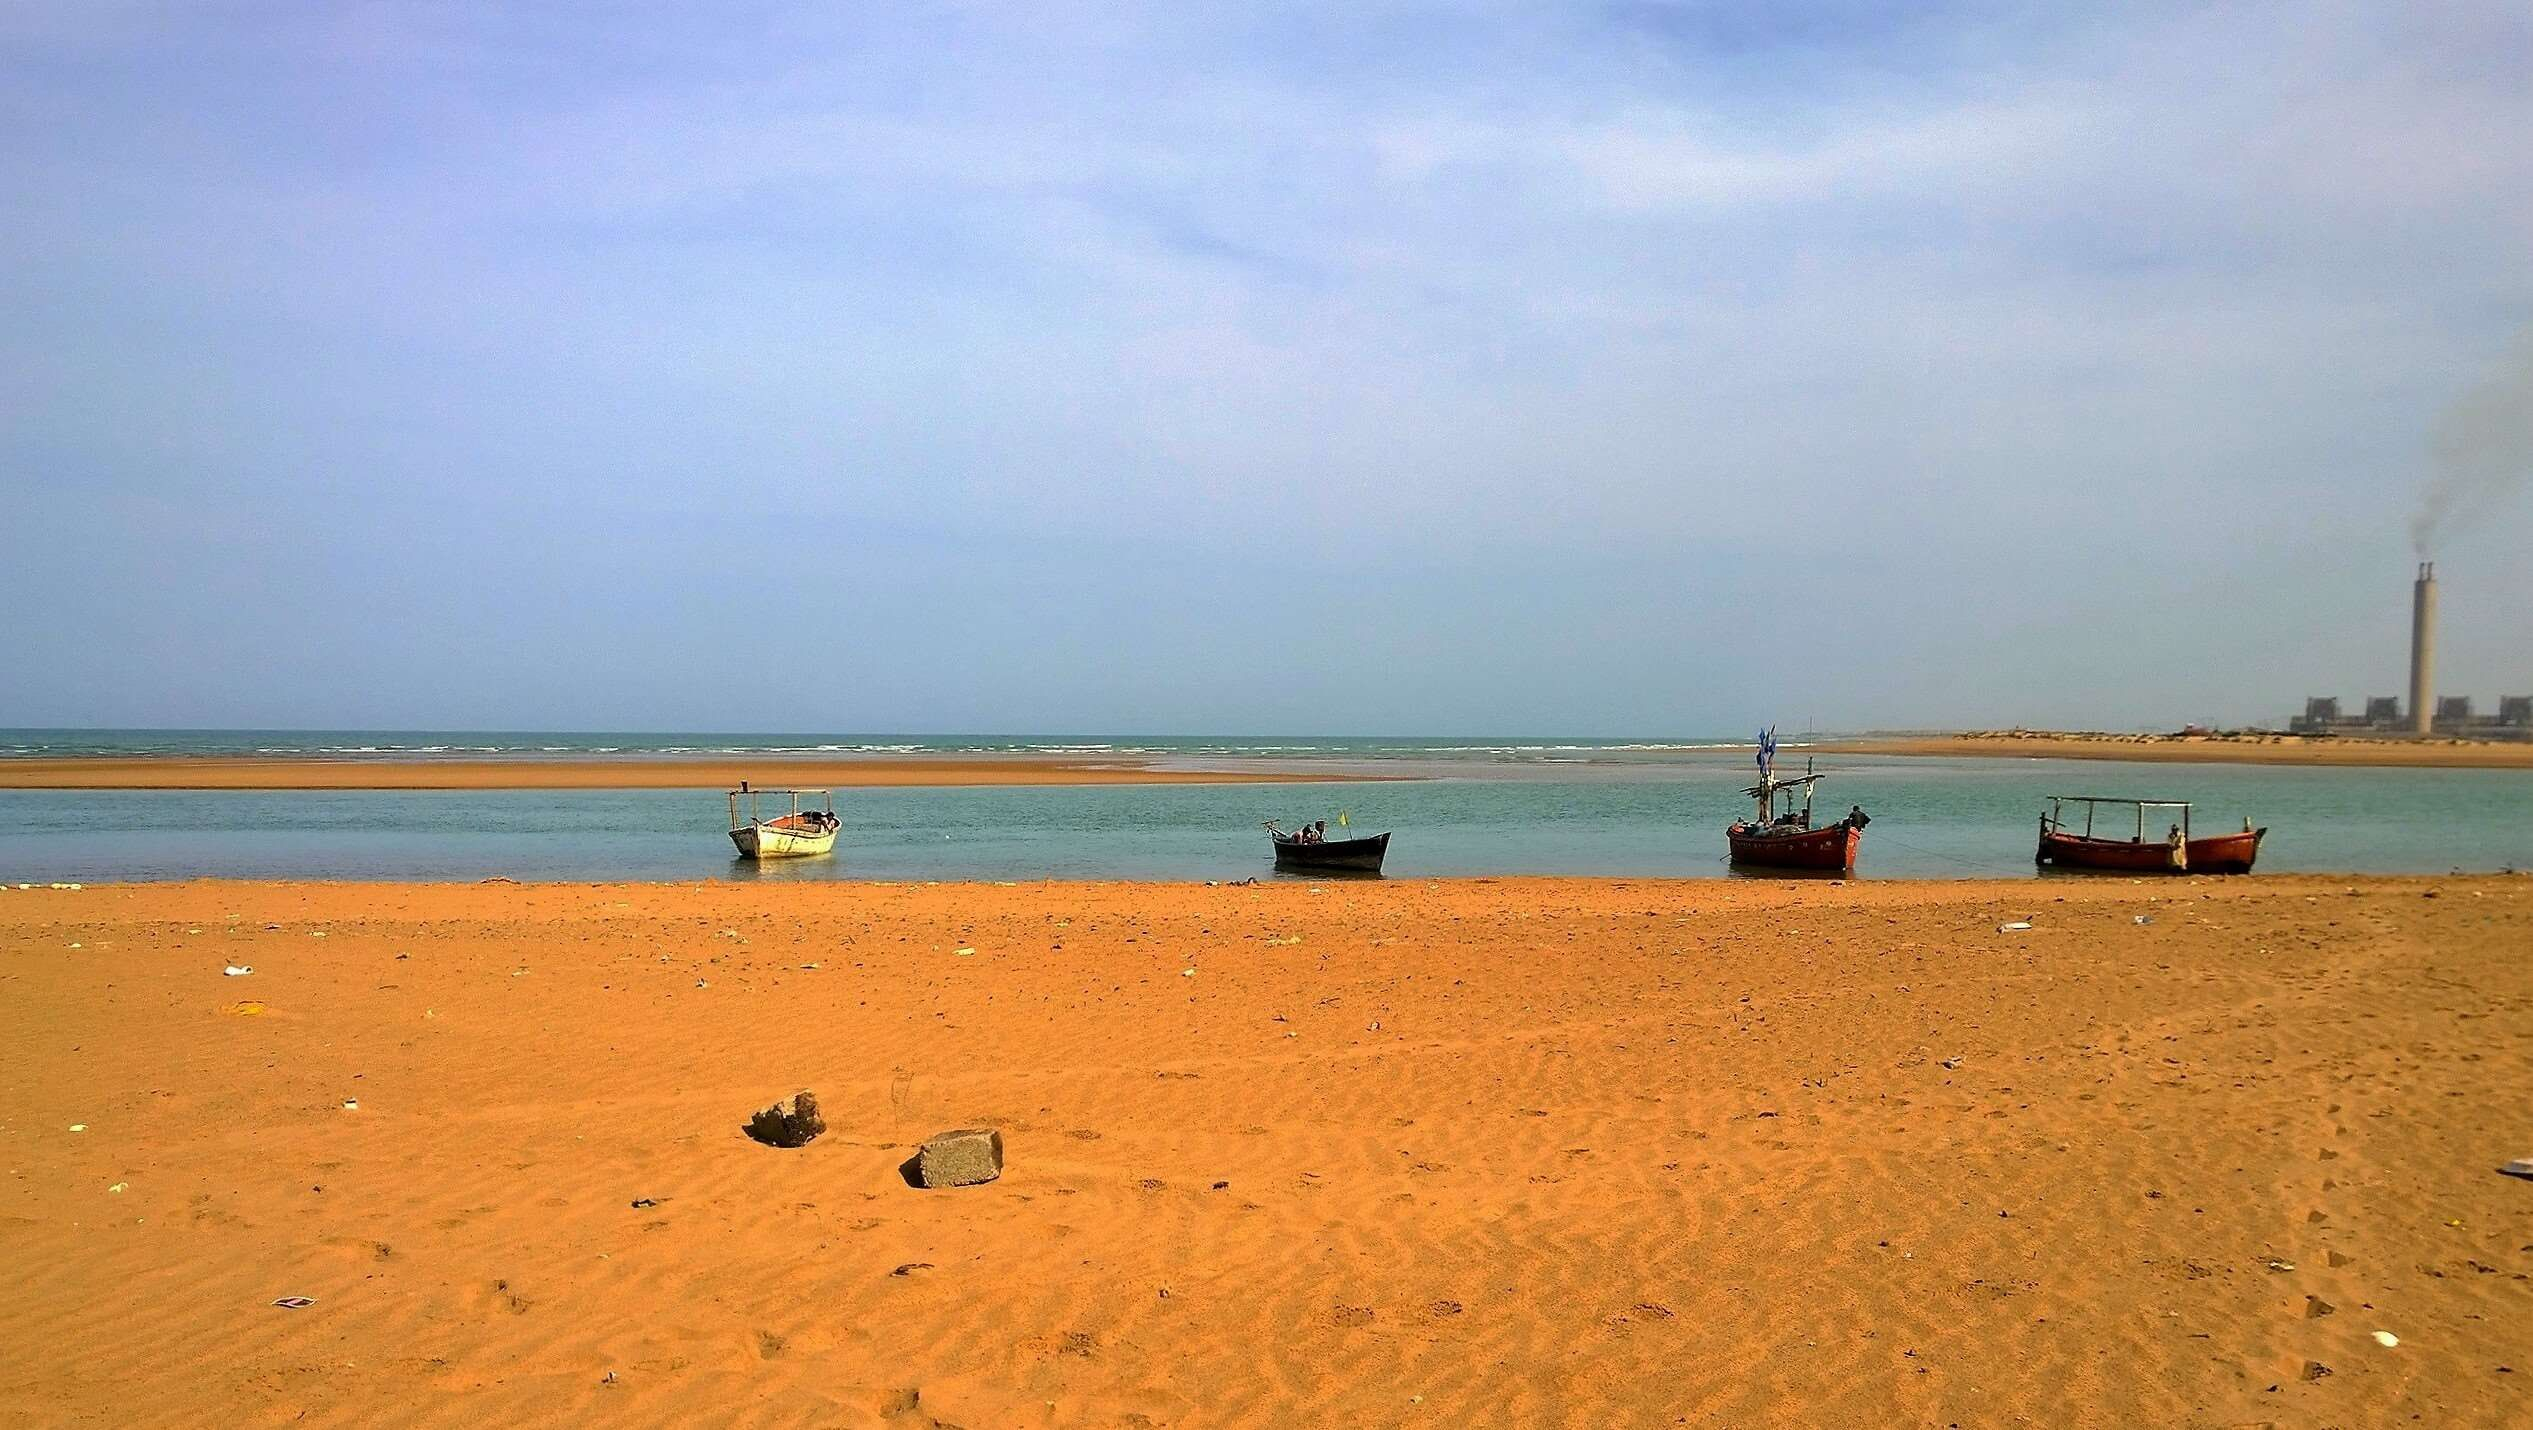 2533x1430 beach #boats #karachi #pakistan #1080P #wallpaper #hdwallpaper #desktop | Hd wallpaper, Beach, Aerial view